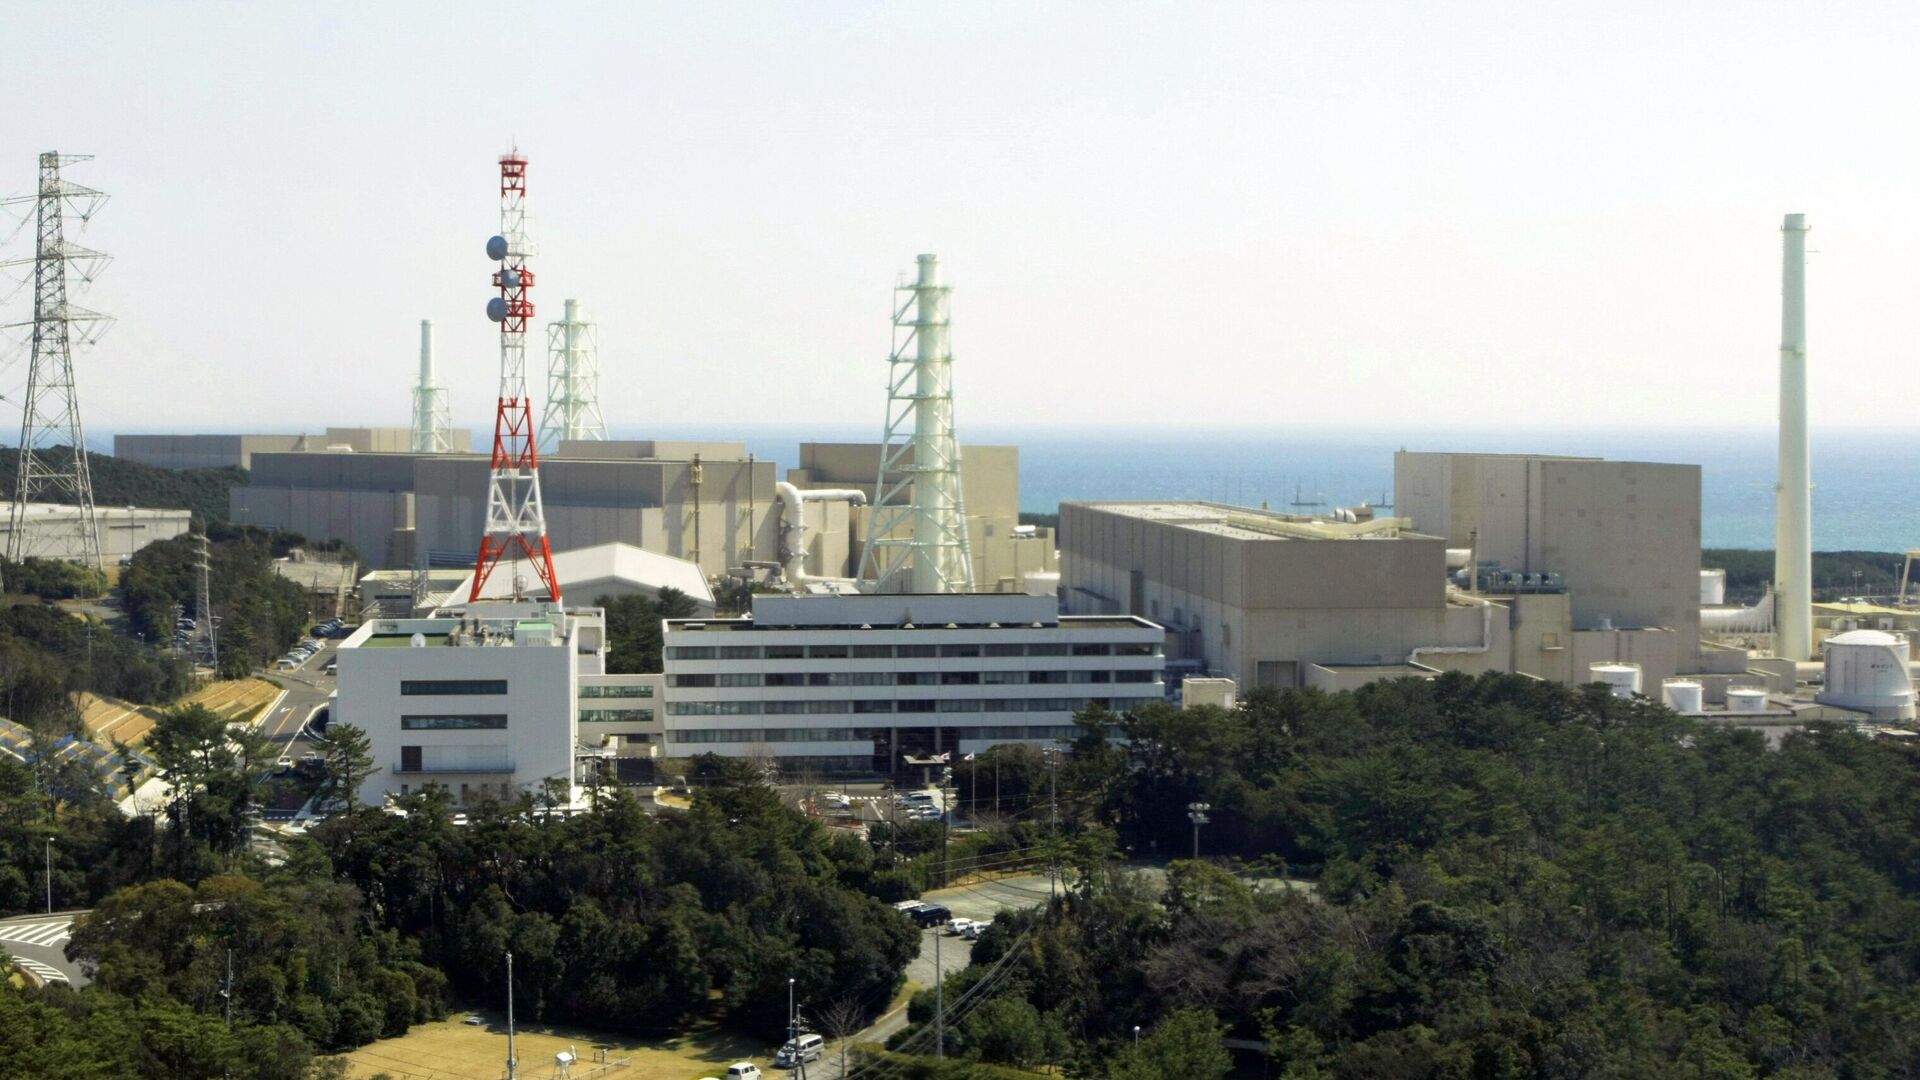 АЭС Хамаока возле города Омаэдзаки, на острове Хонсю, префектура Сидзуока, Япония - РИА Новости, 1920, 17.08.2021